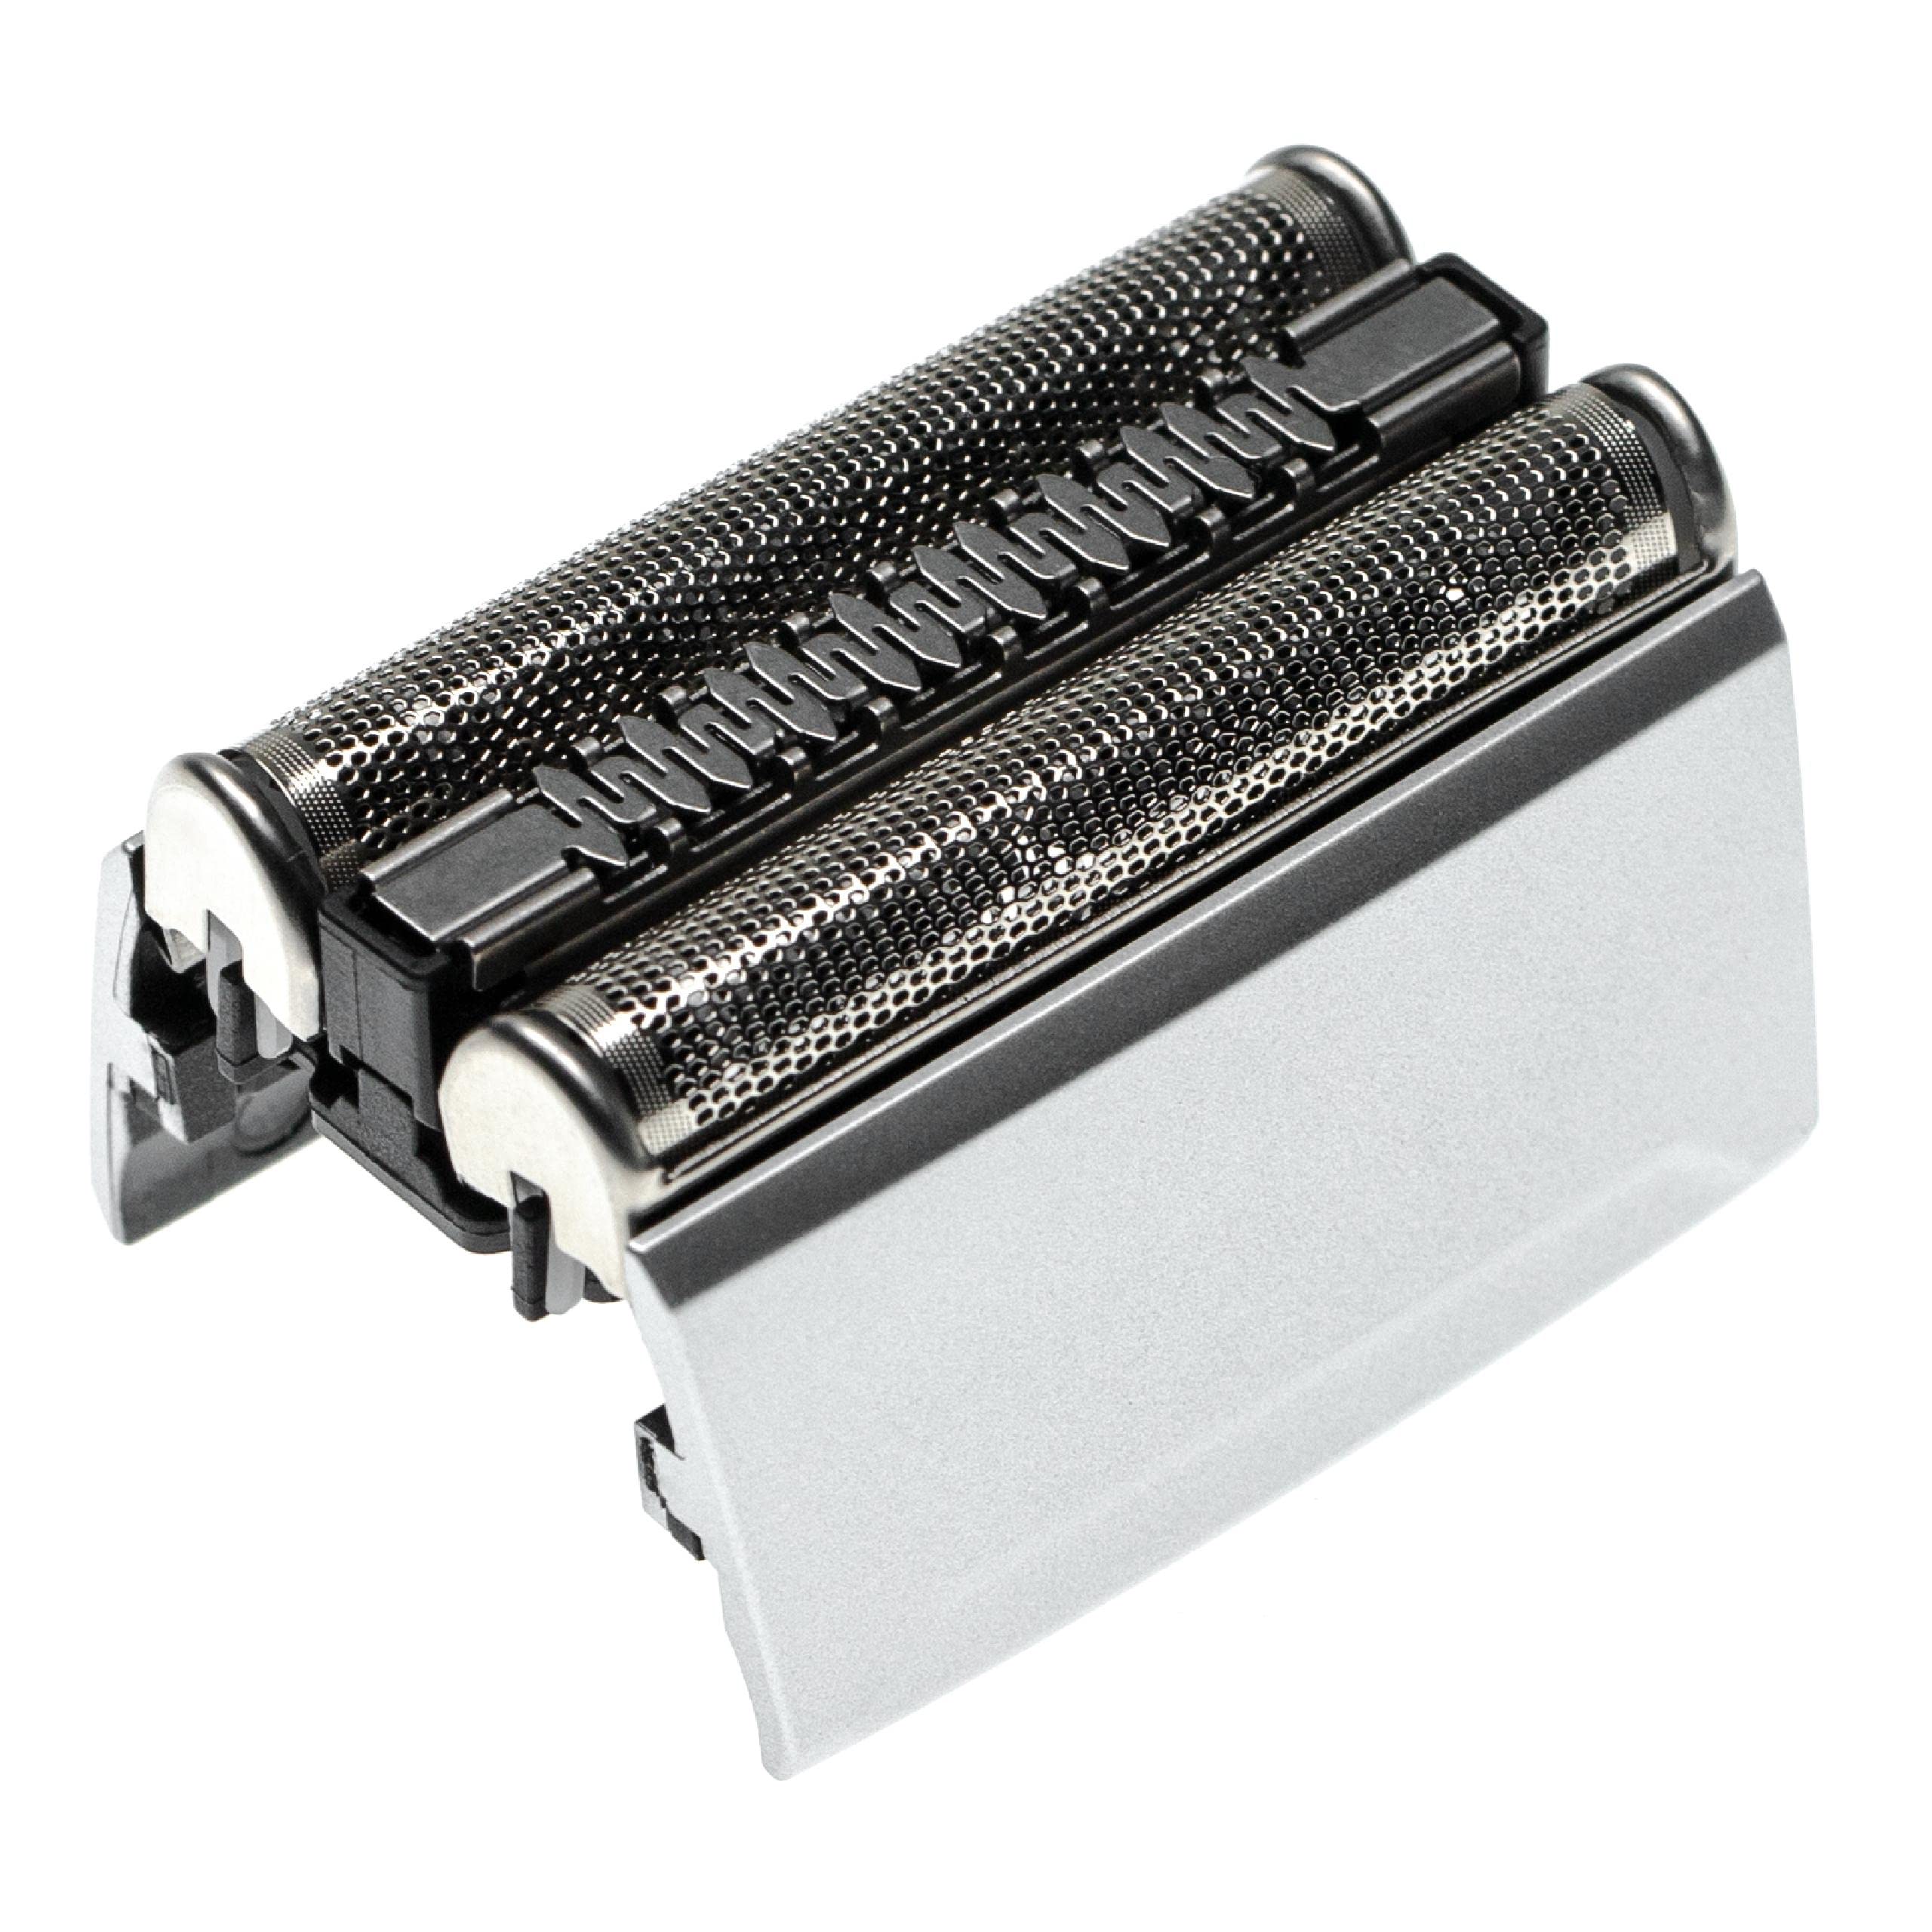 vhbw Rasierkopf kompatibel mit Braun 5090cc (5748/5749) Elektrorasierer - Scherkopfkassette, silber